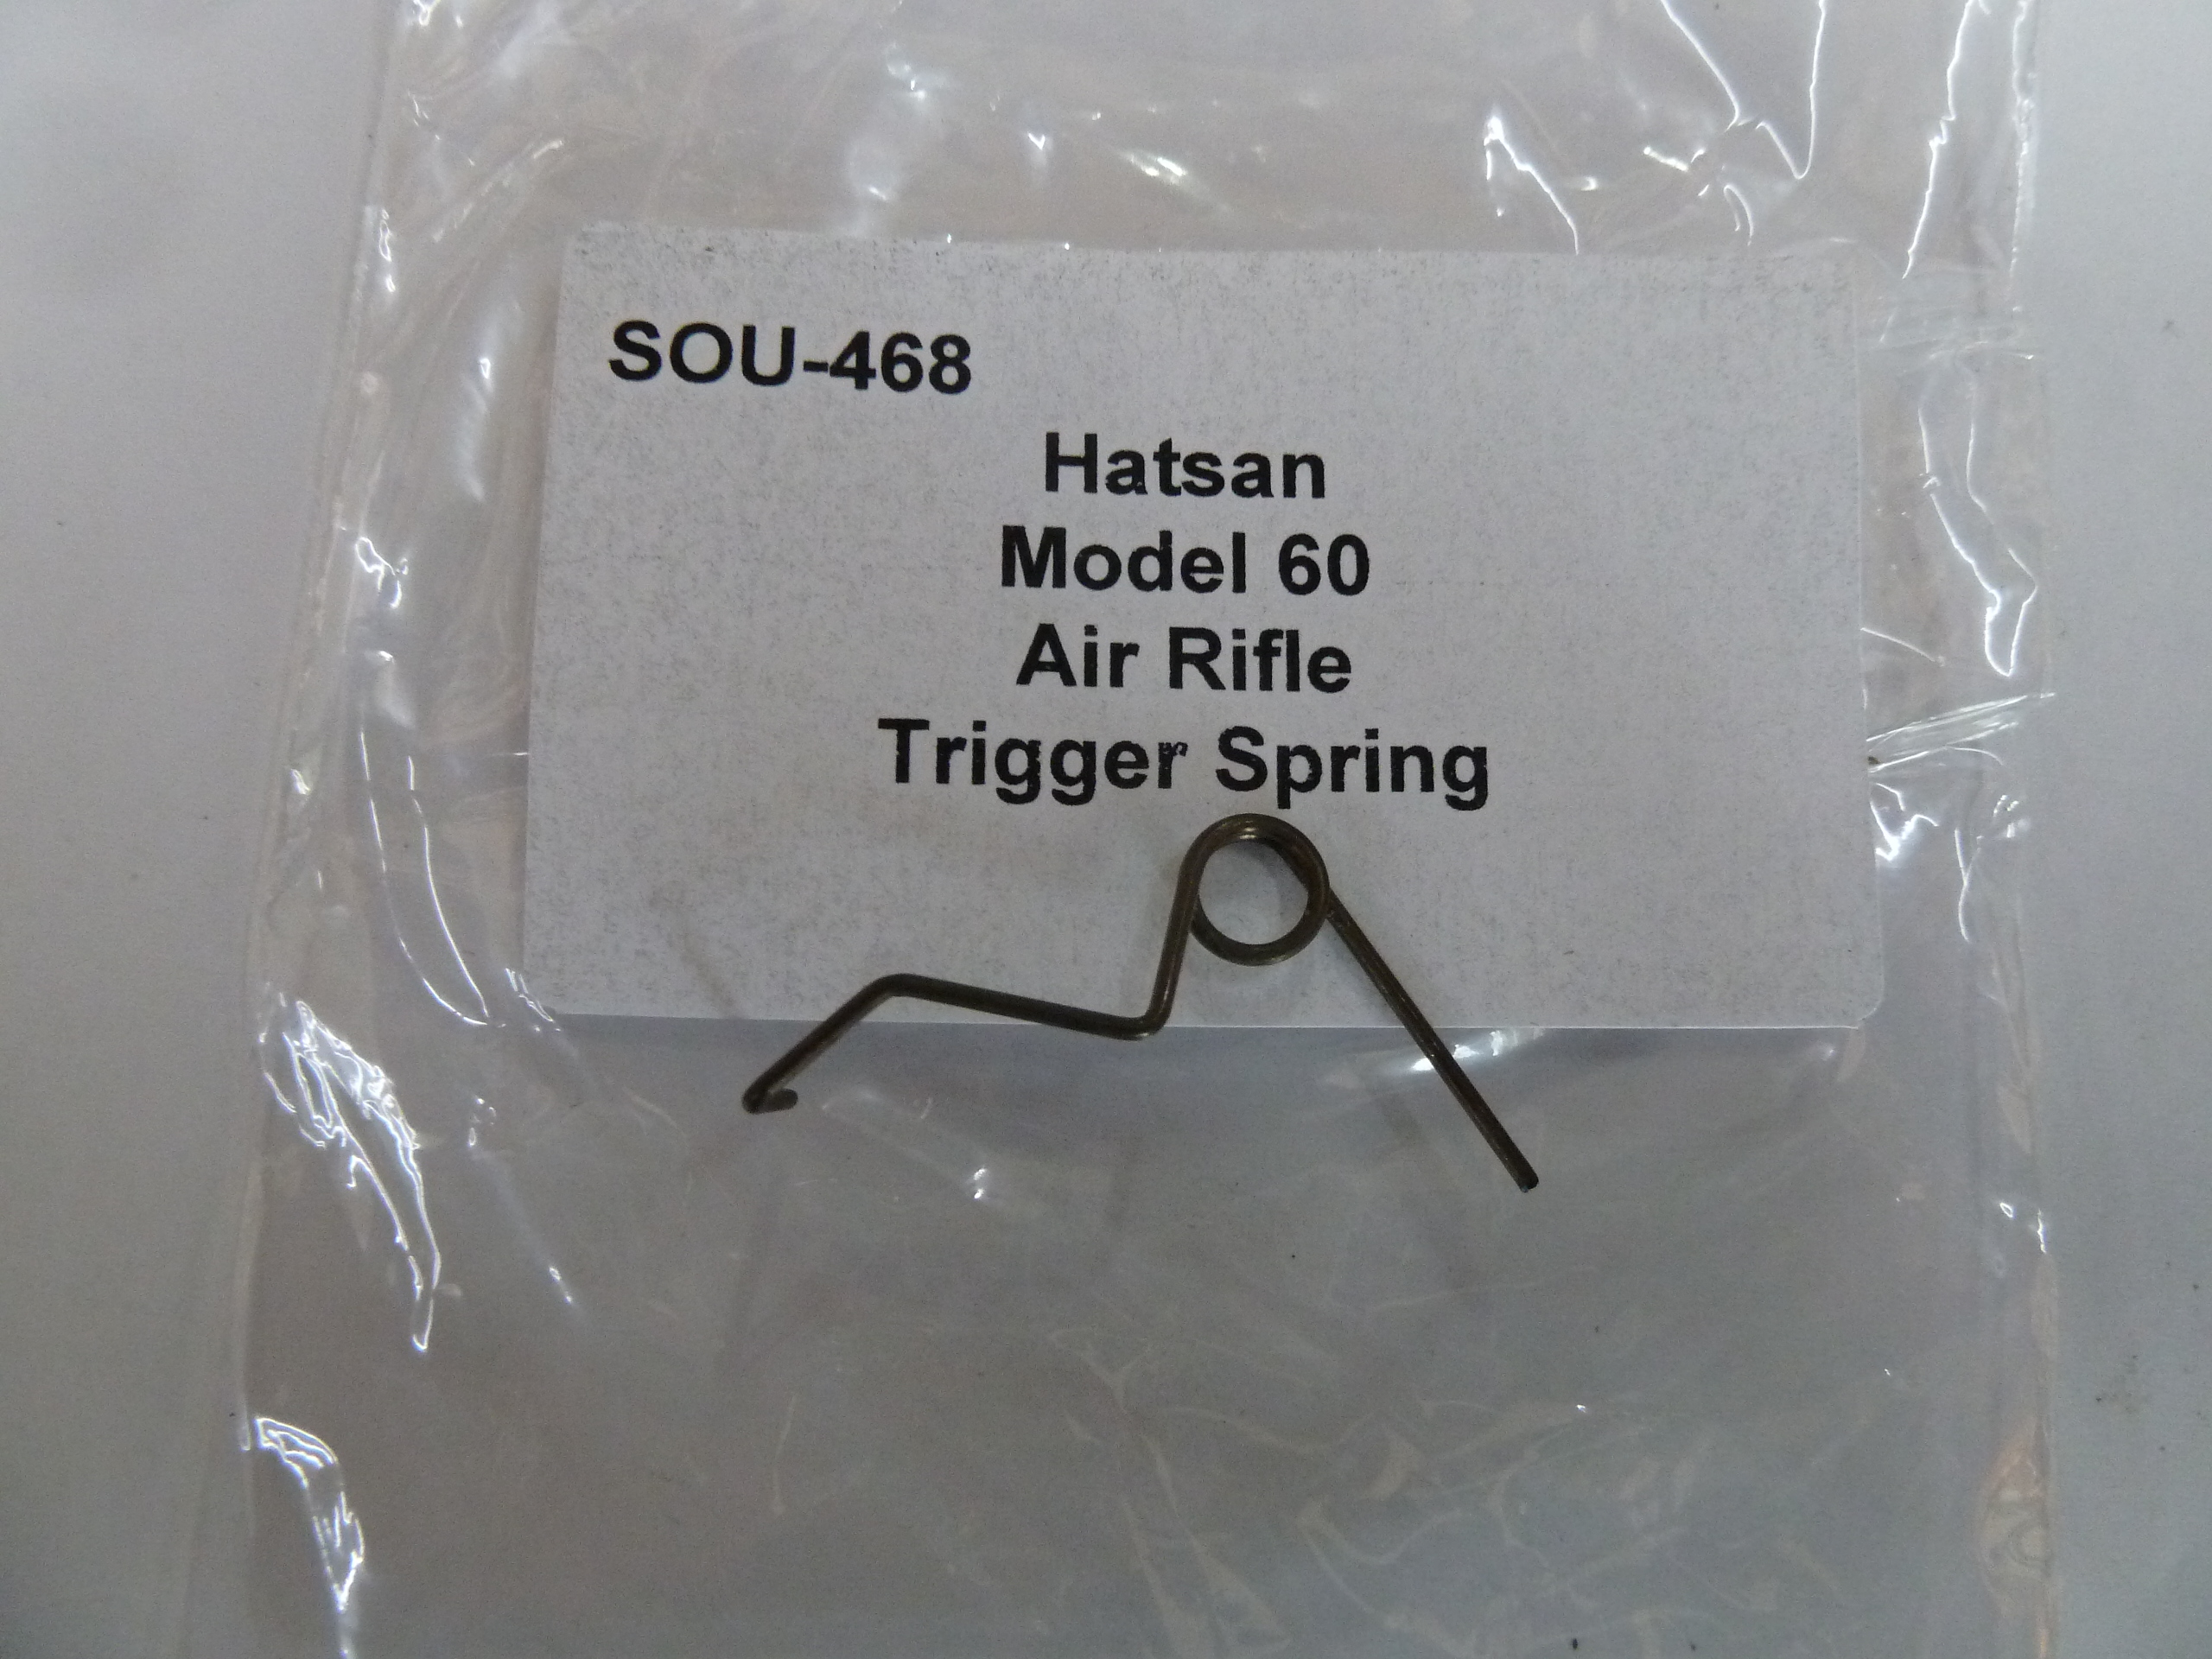 Hatsan Model 60 trigger spring